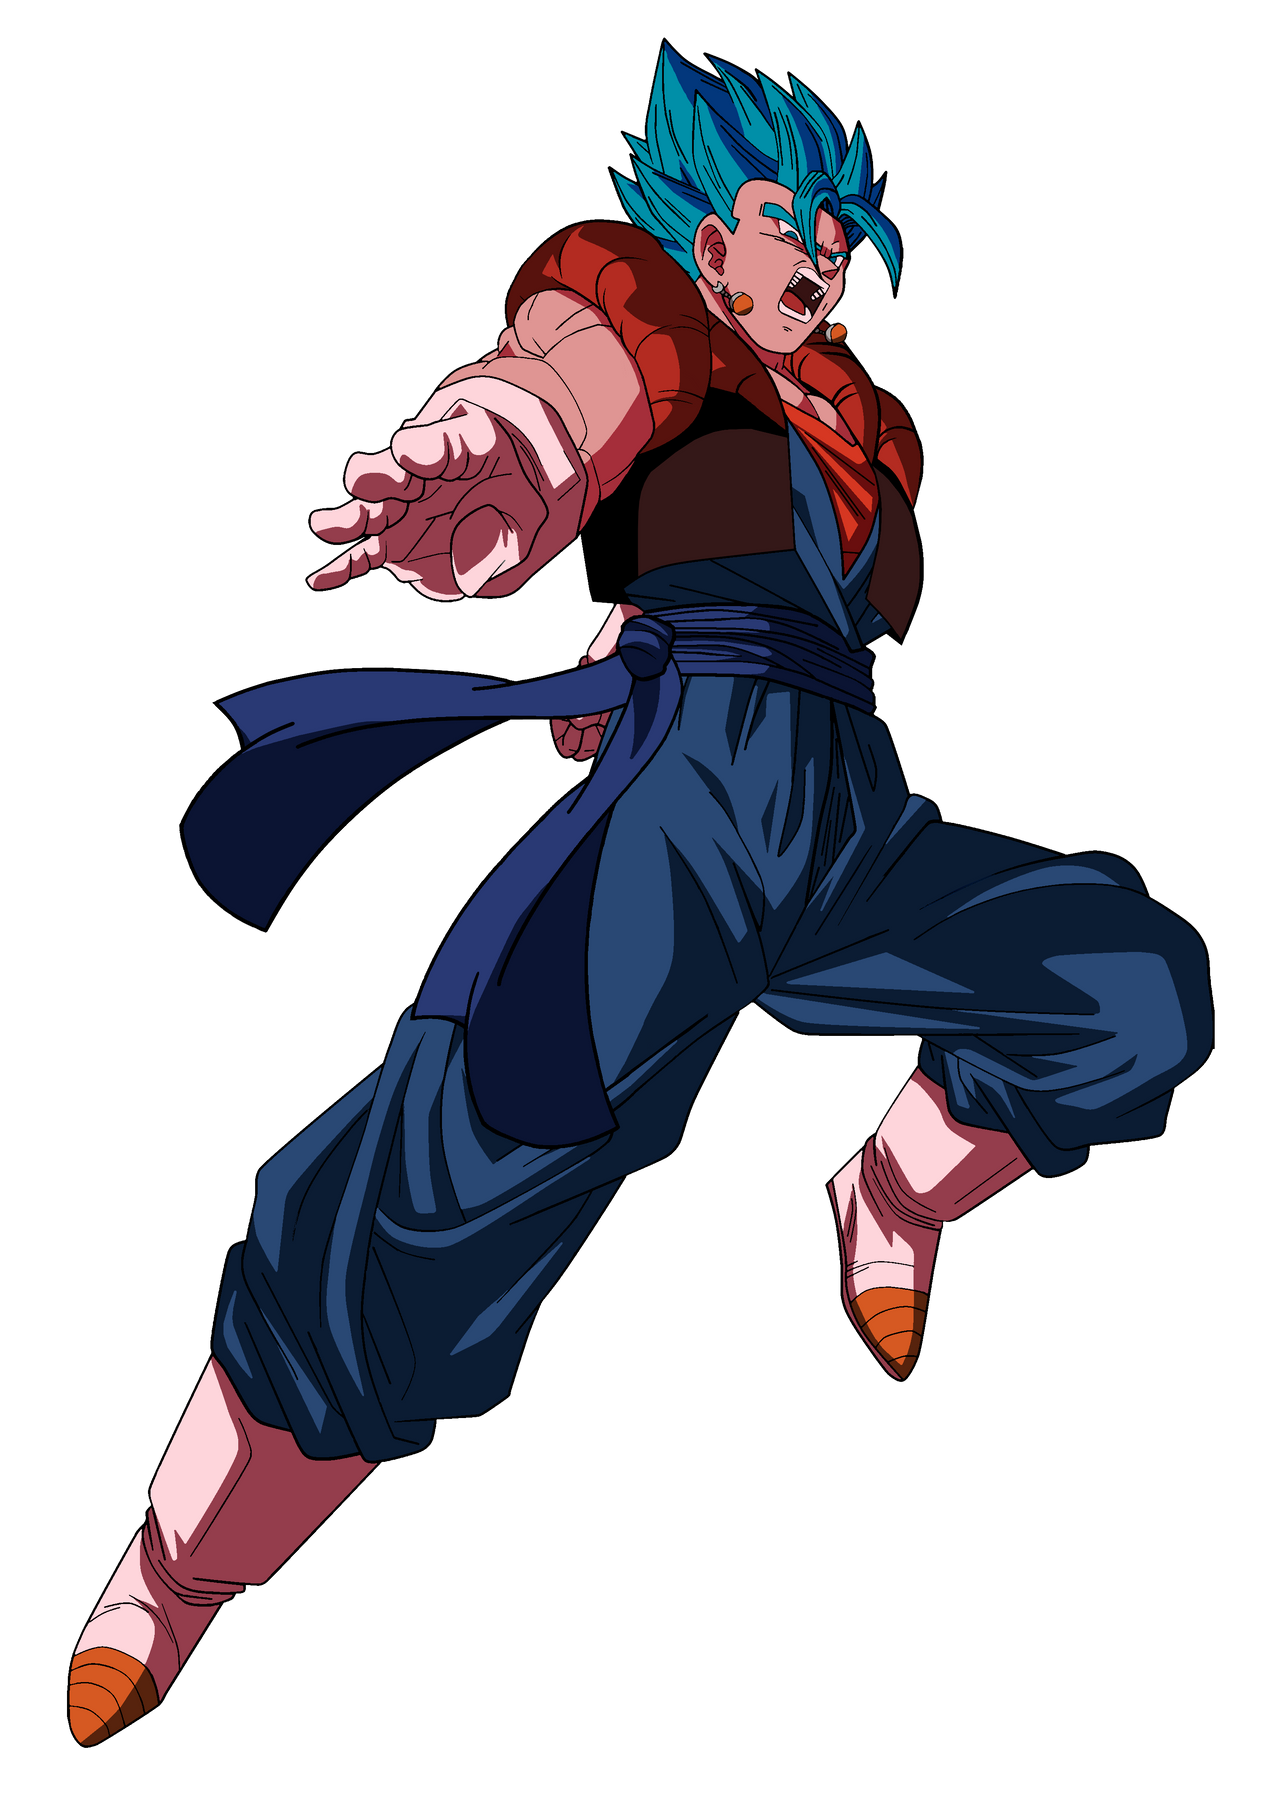 Goku ssj 2 blue by darknessgoku on DeviantArt Anime dragon ball